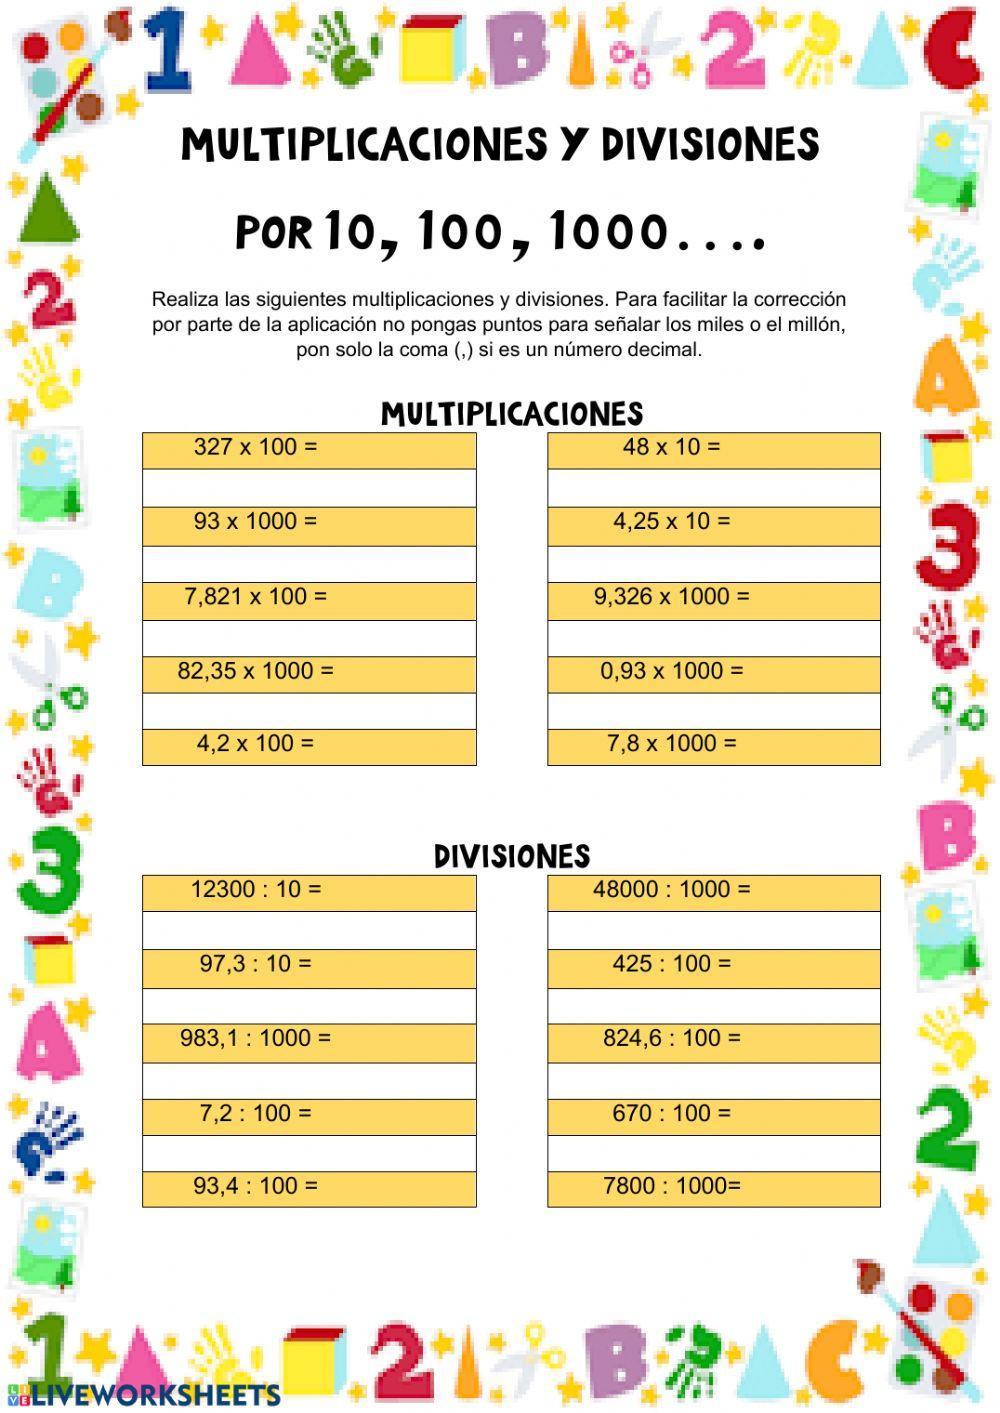 Multiplicaciones y divisiones por 10, 100, 1000